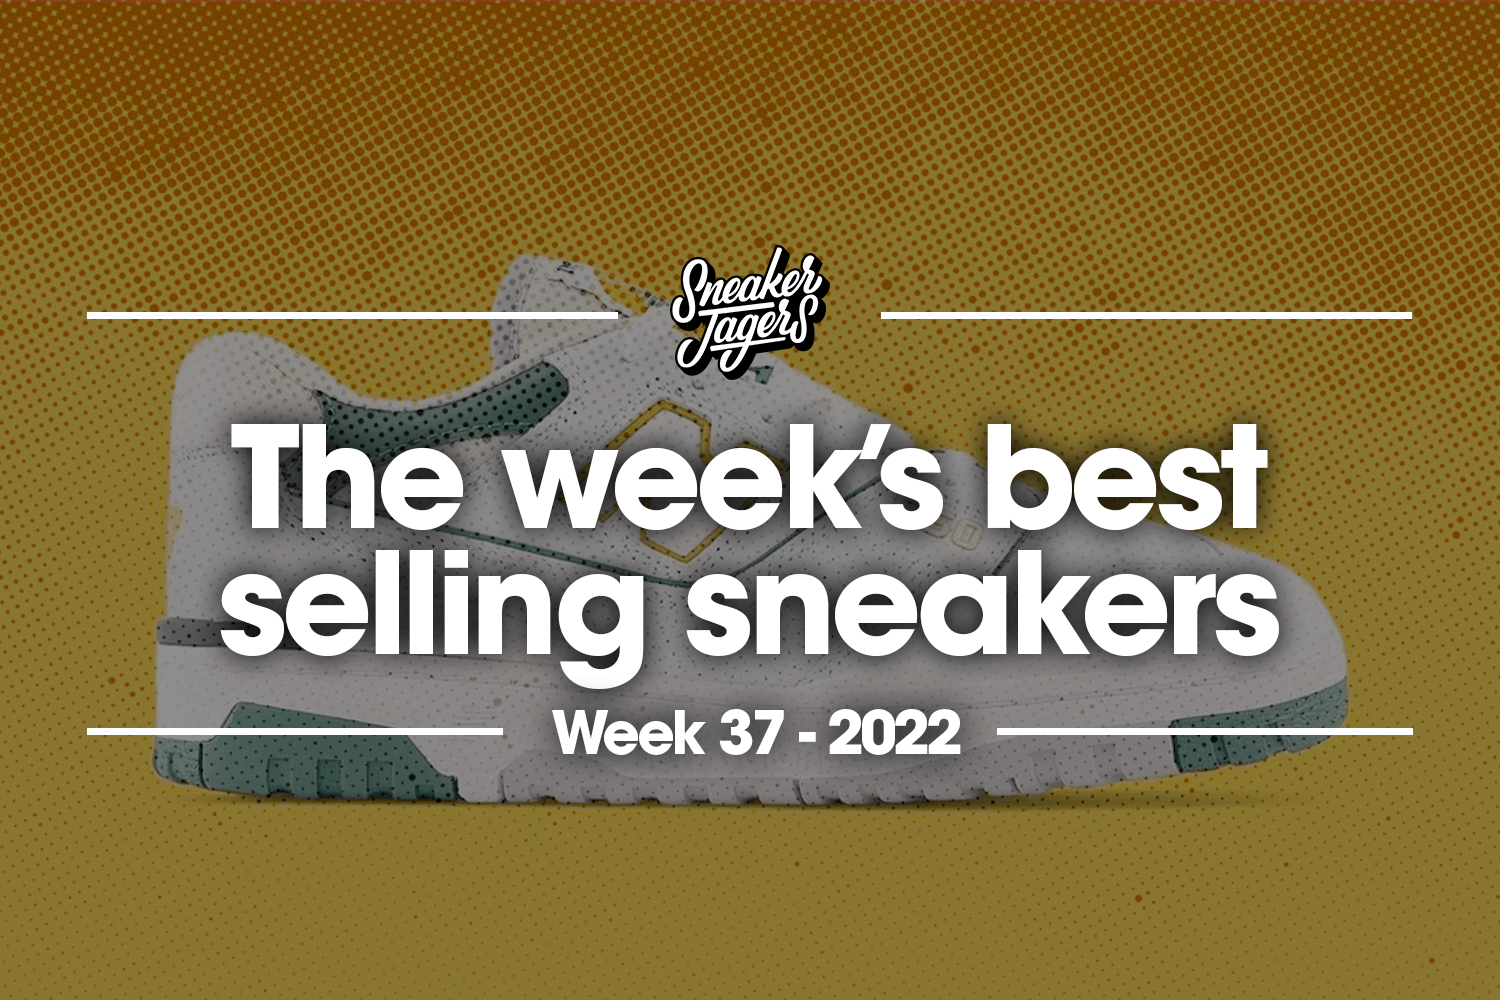 The 5 best selling sneakers of Week 37